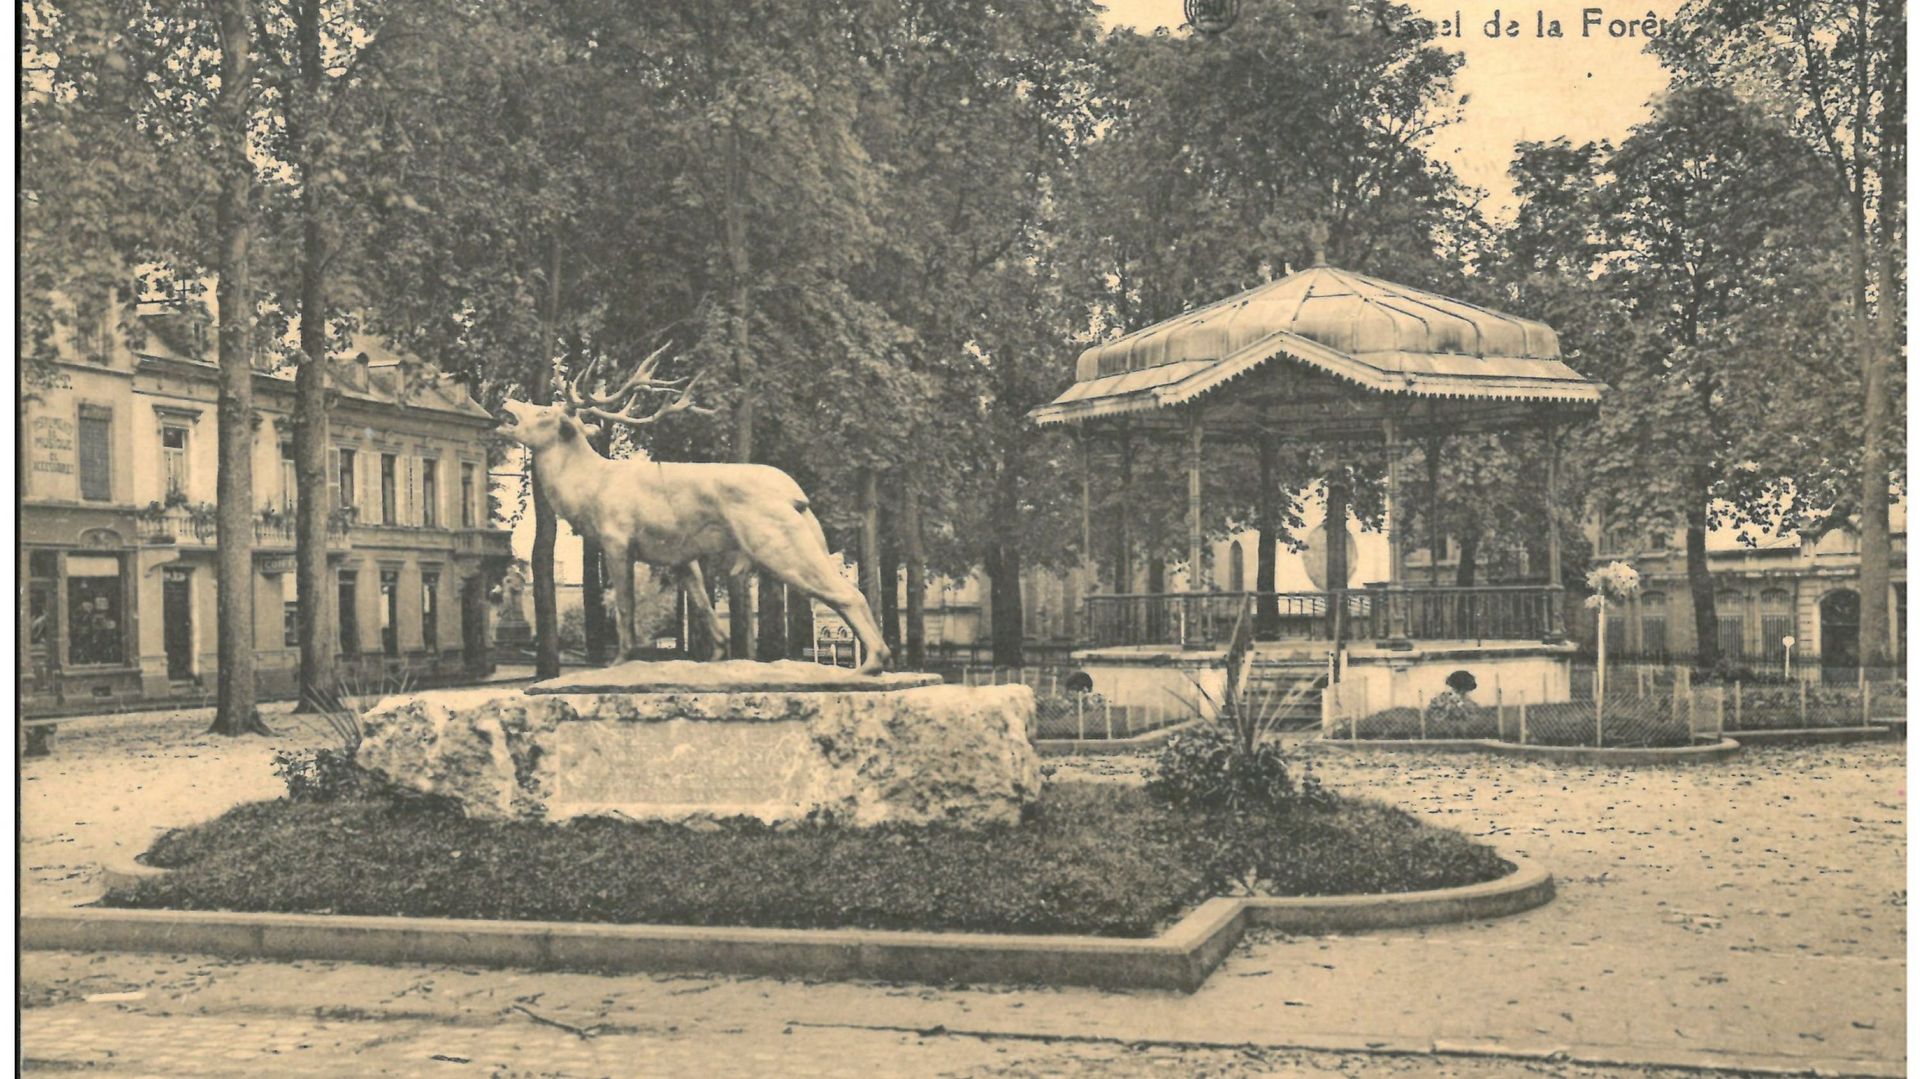 Une carte postale présentant la statue à son emplacement d'origine